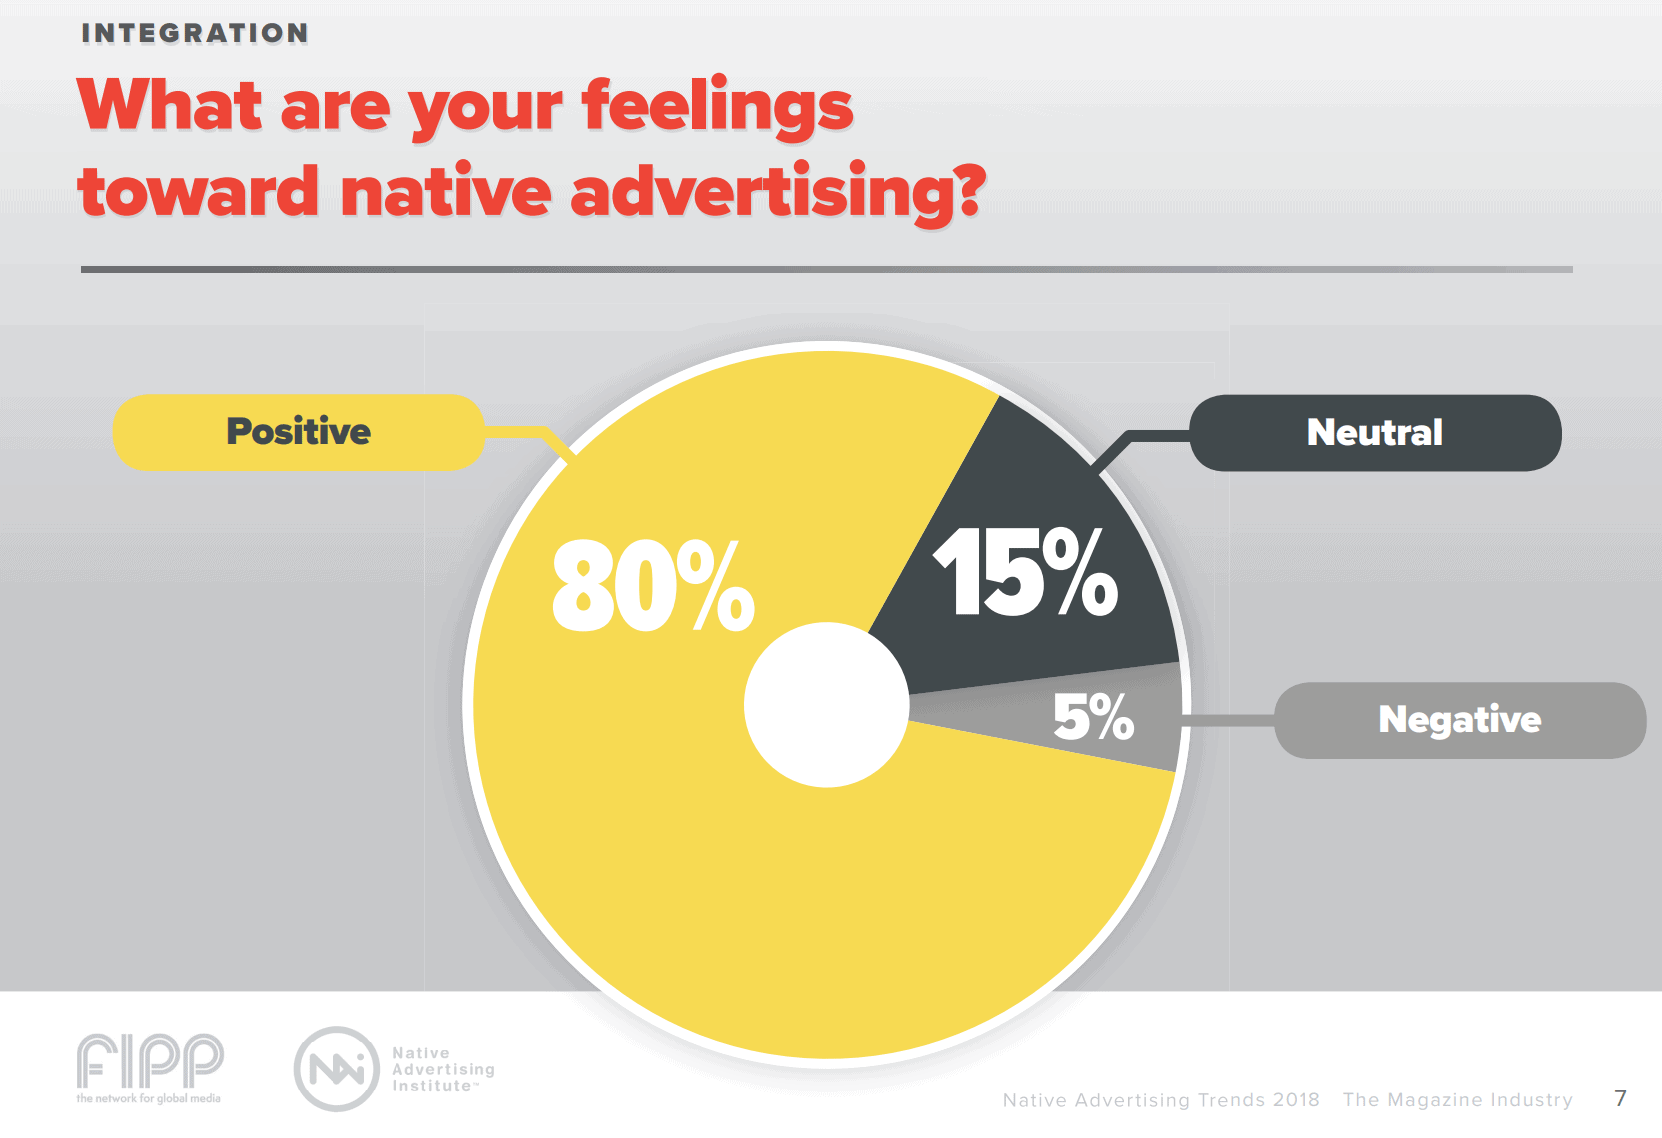 native ad